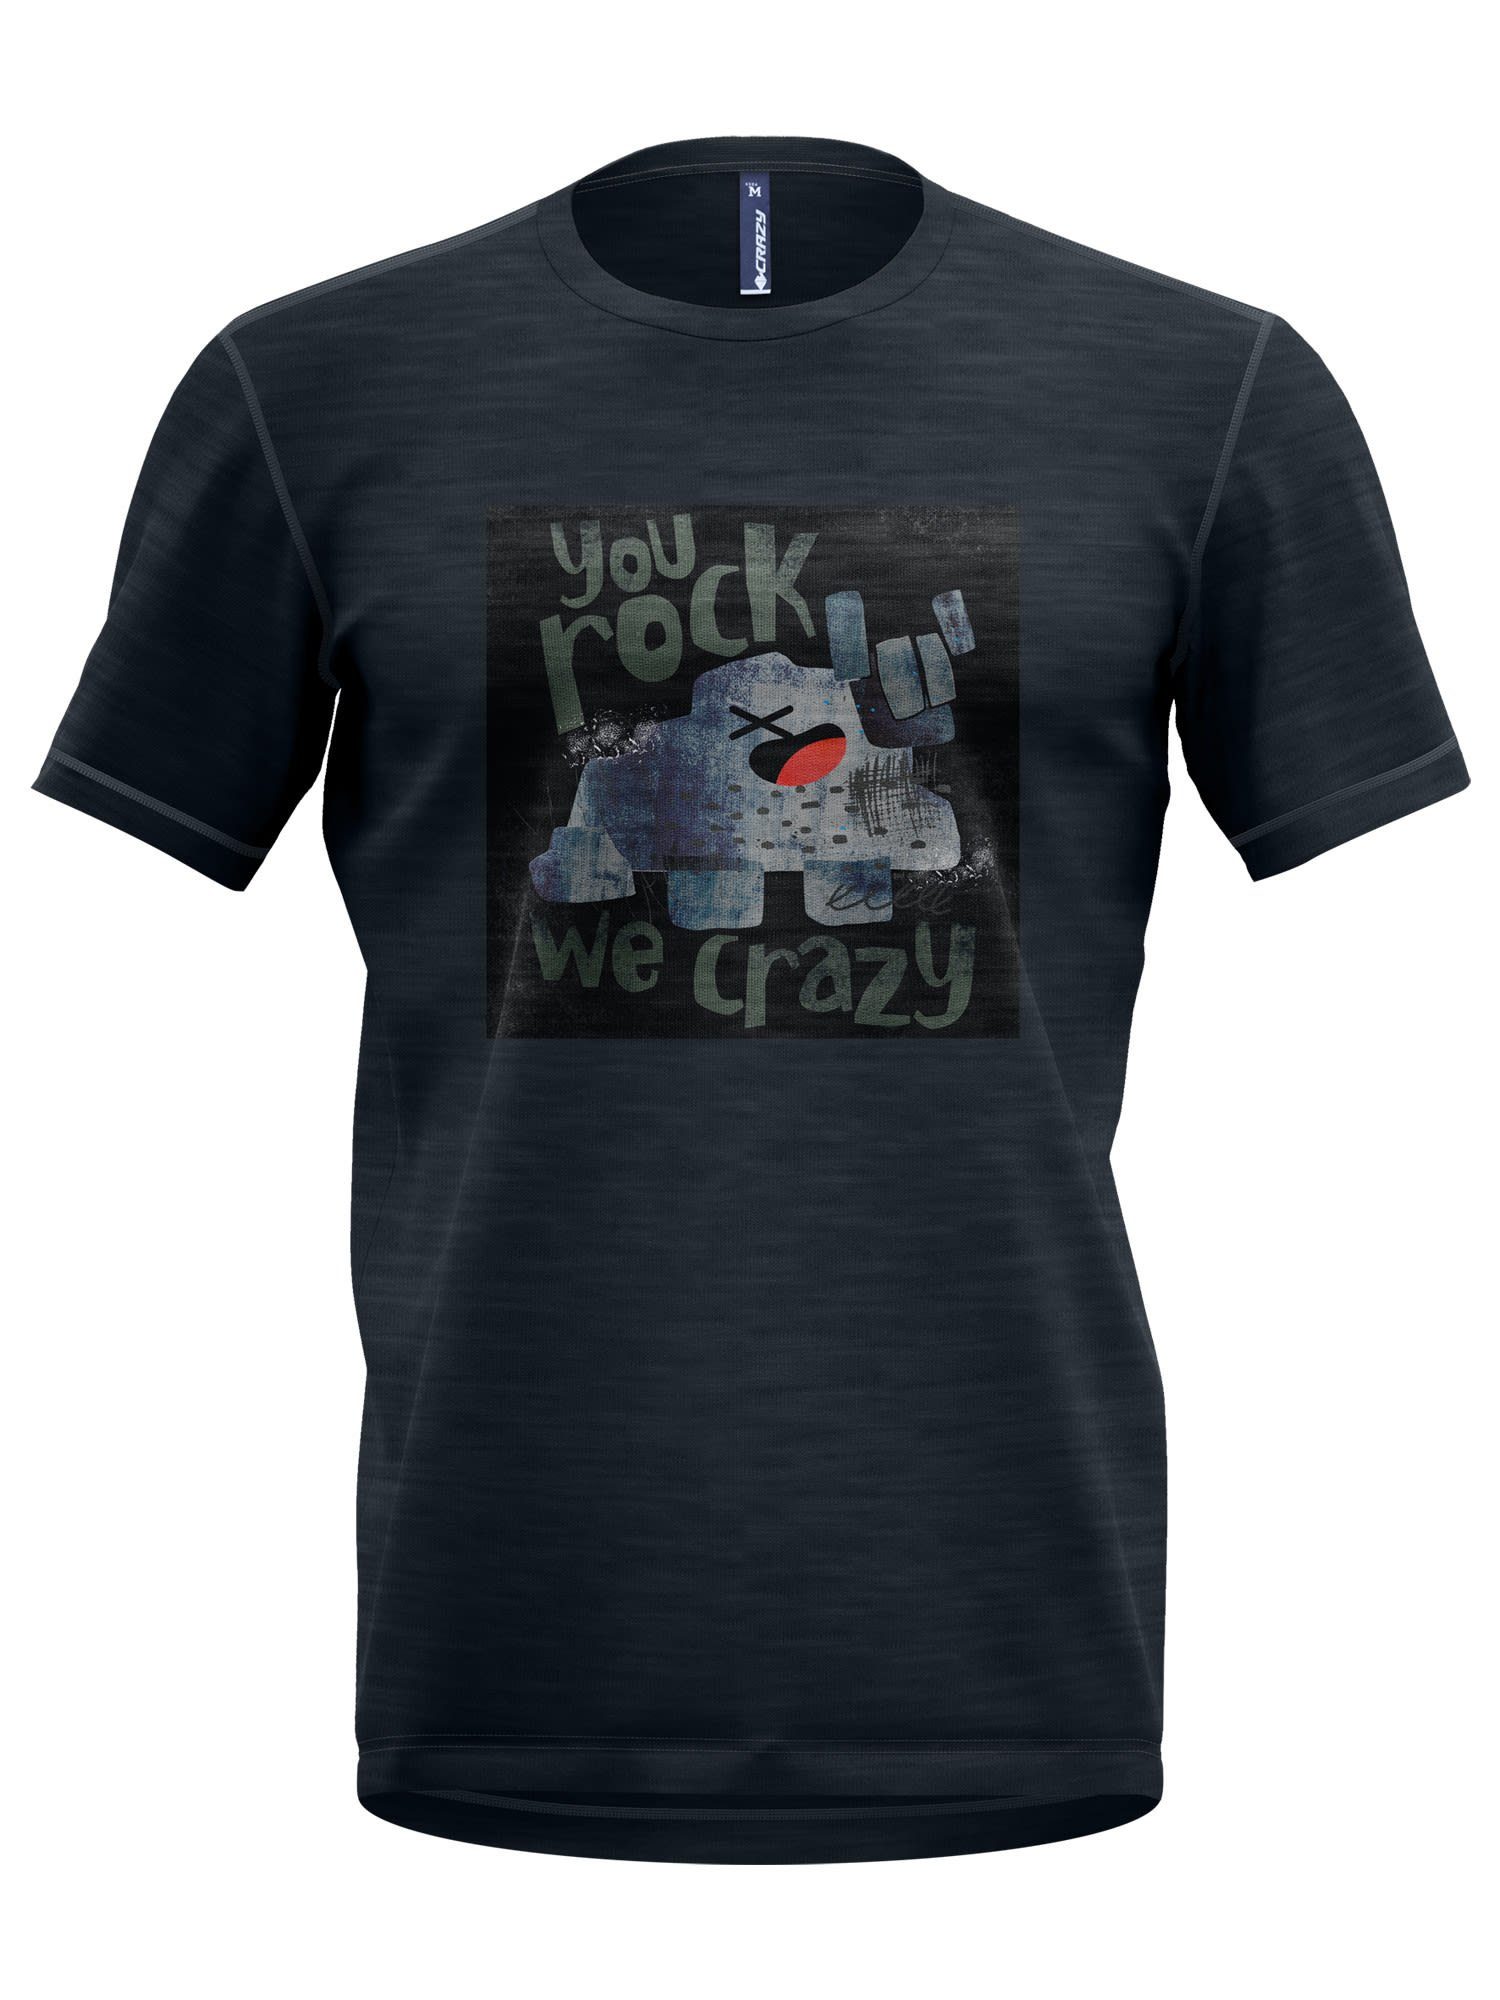 Crazylifestyle T-Shirt Crazy Idea M T-shirt Joker Herren Kurzarm-Shirt Rock